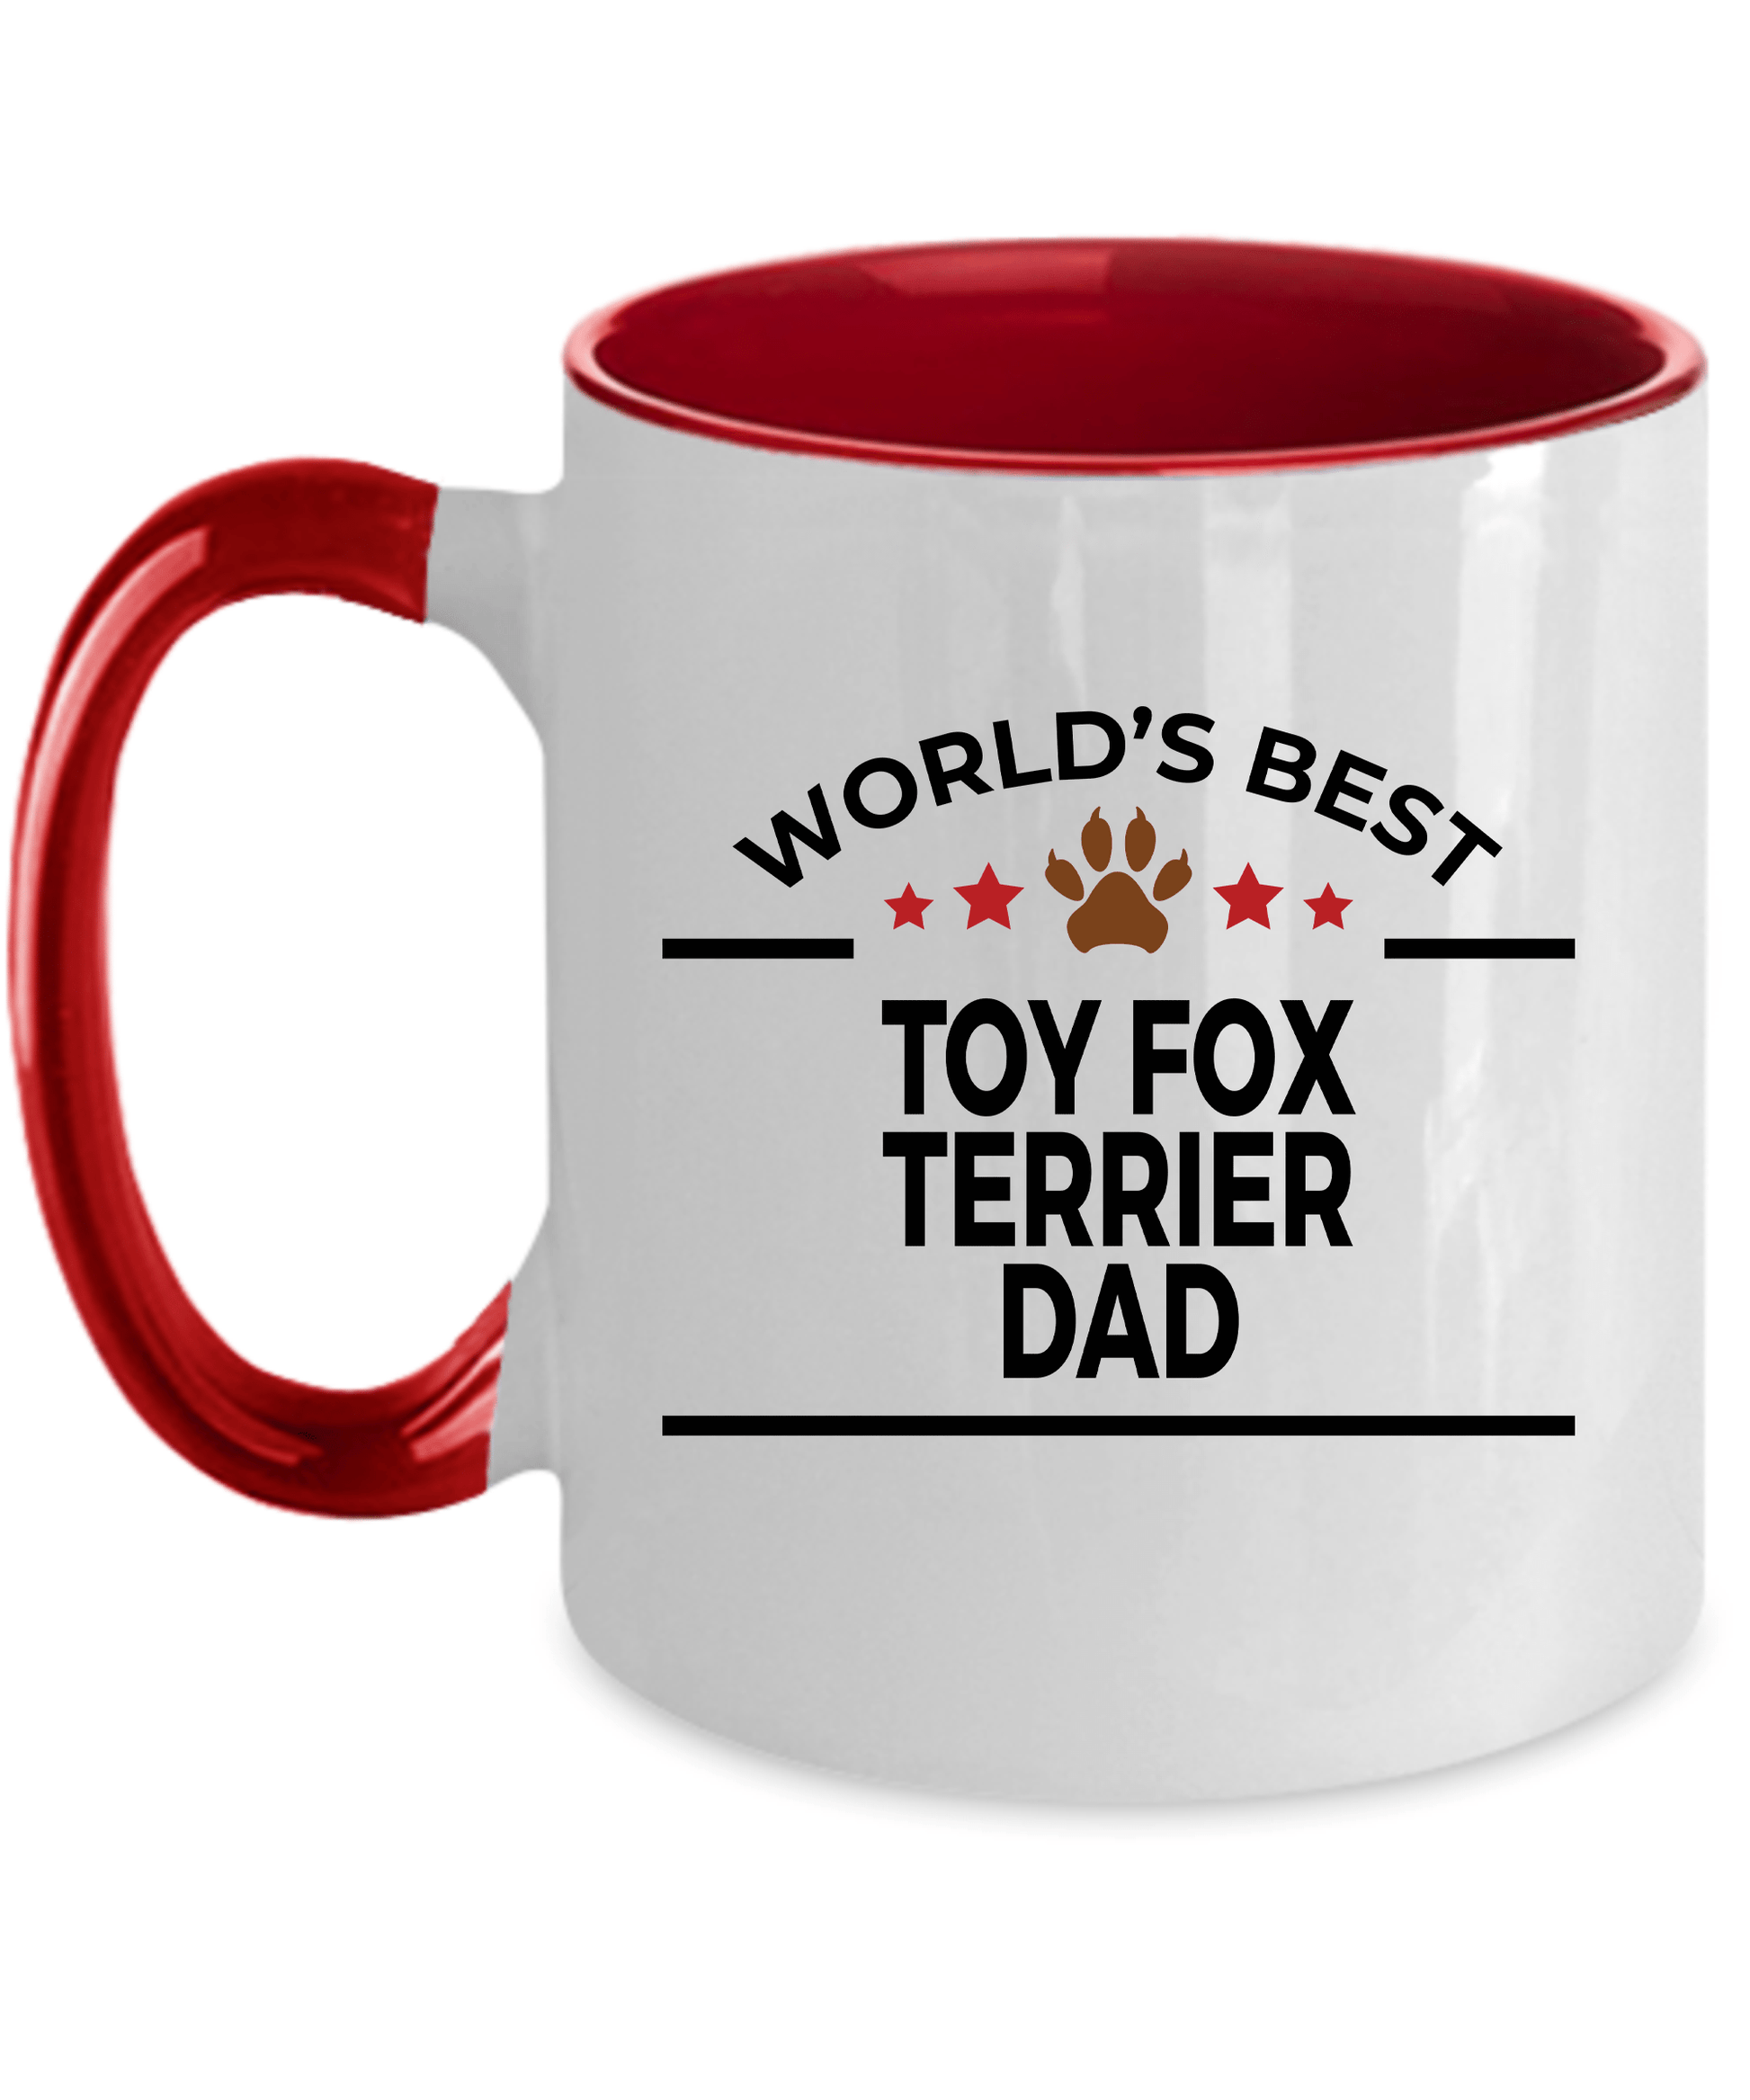 Toy Fox Terrier Dog Dad Coffee Mug